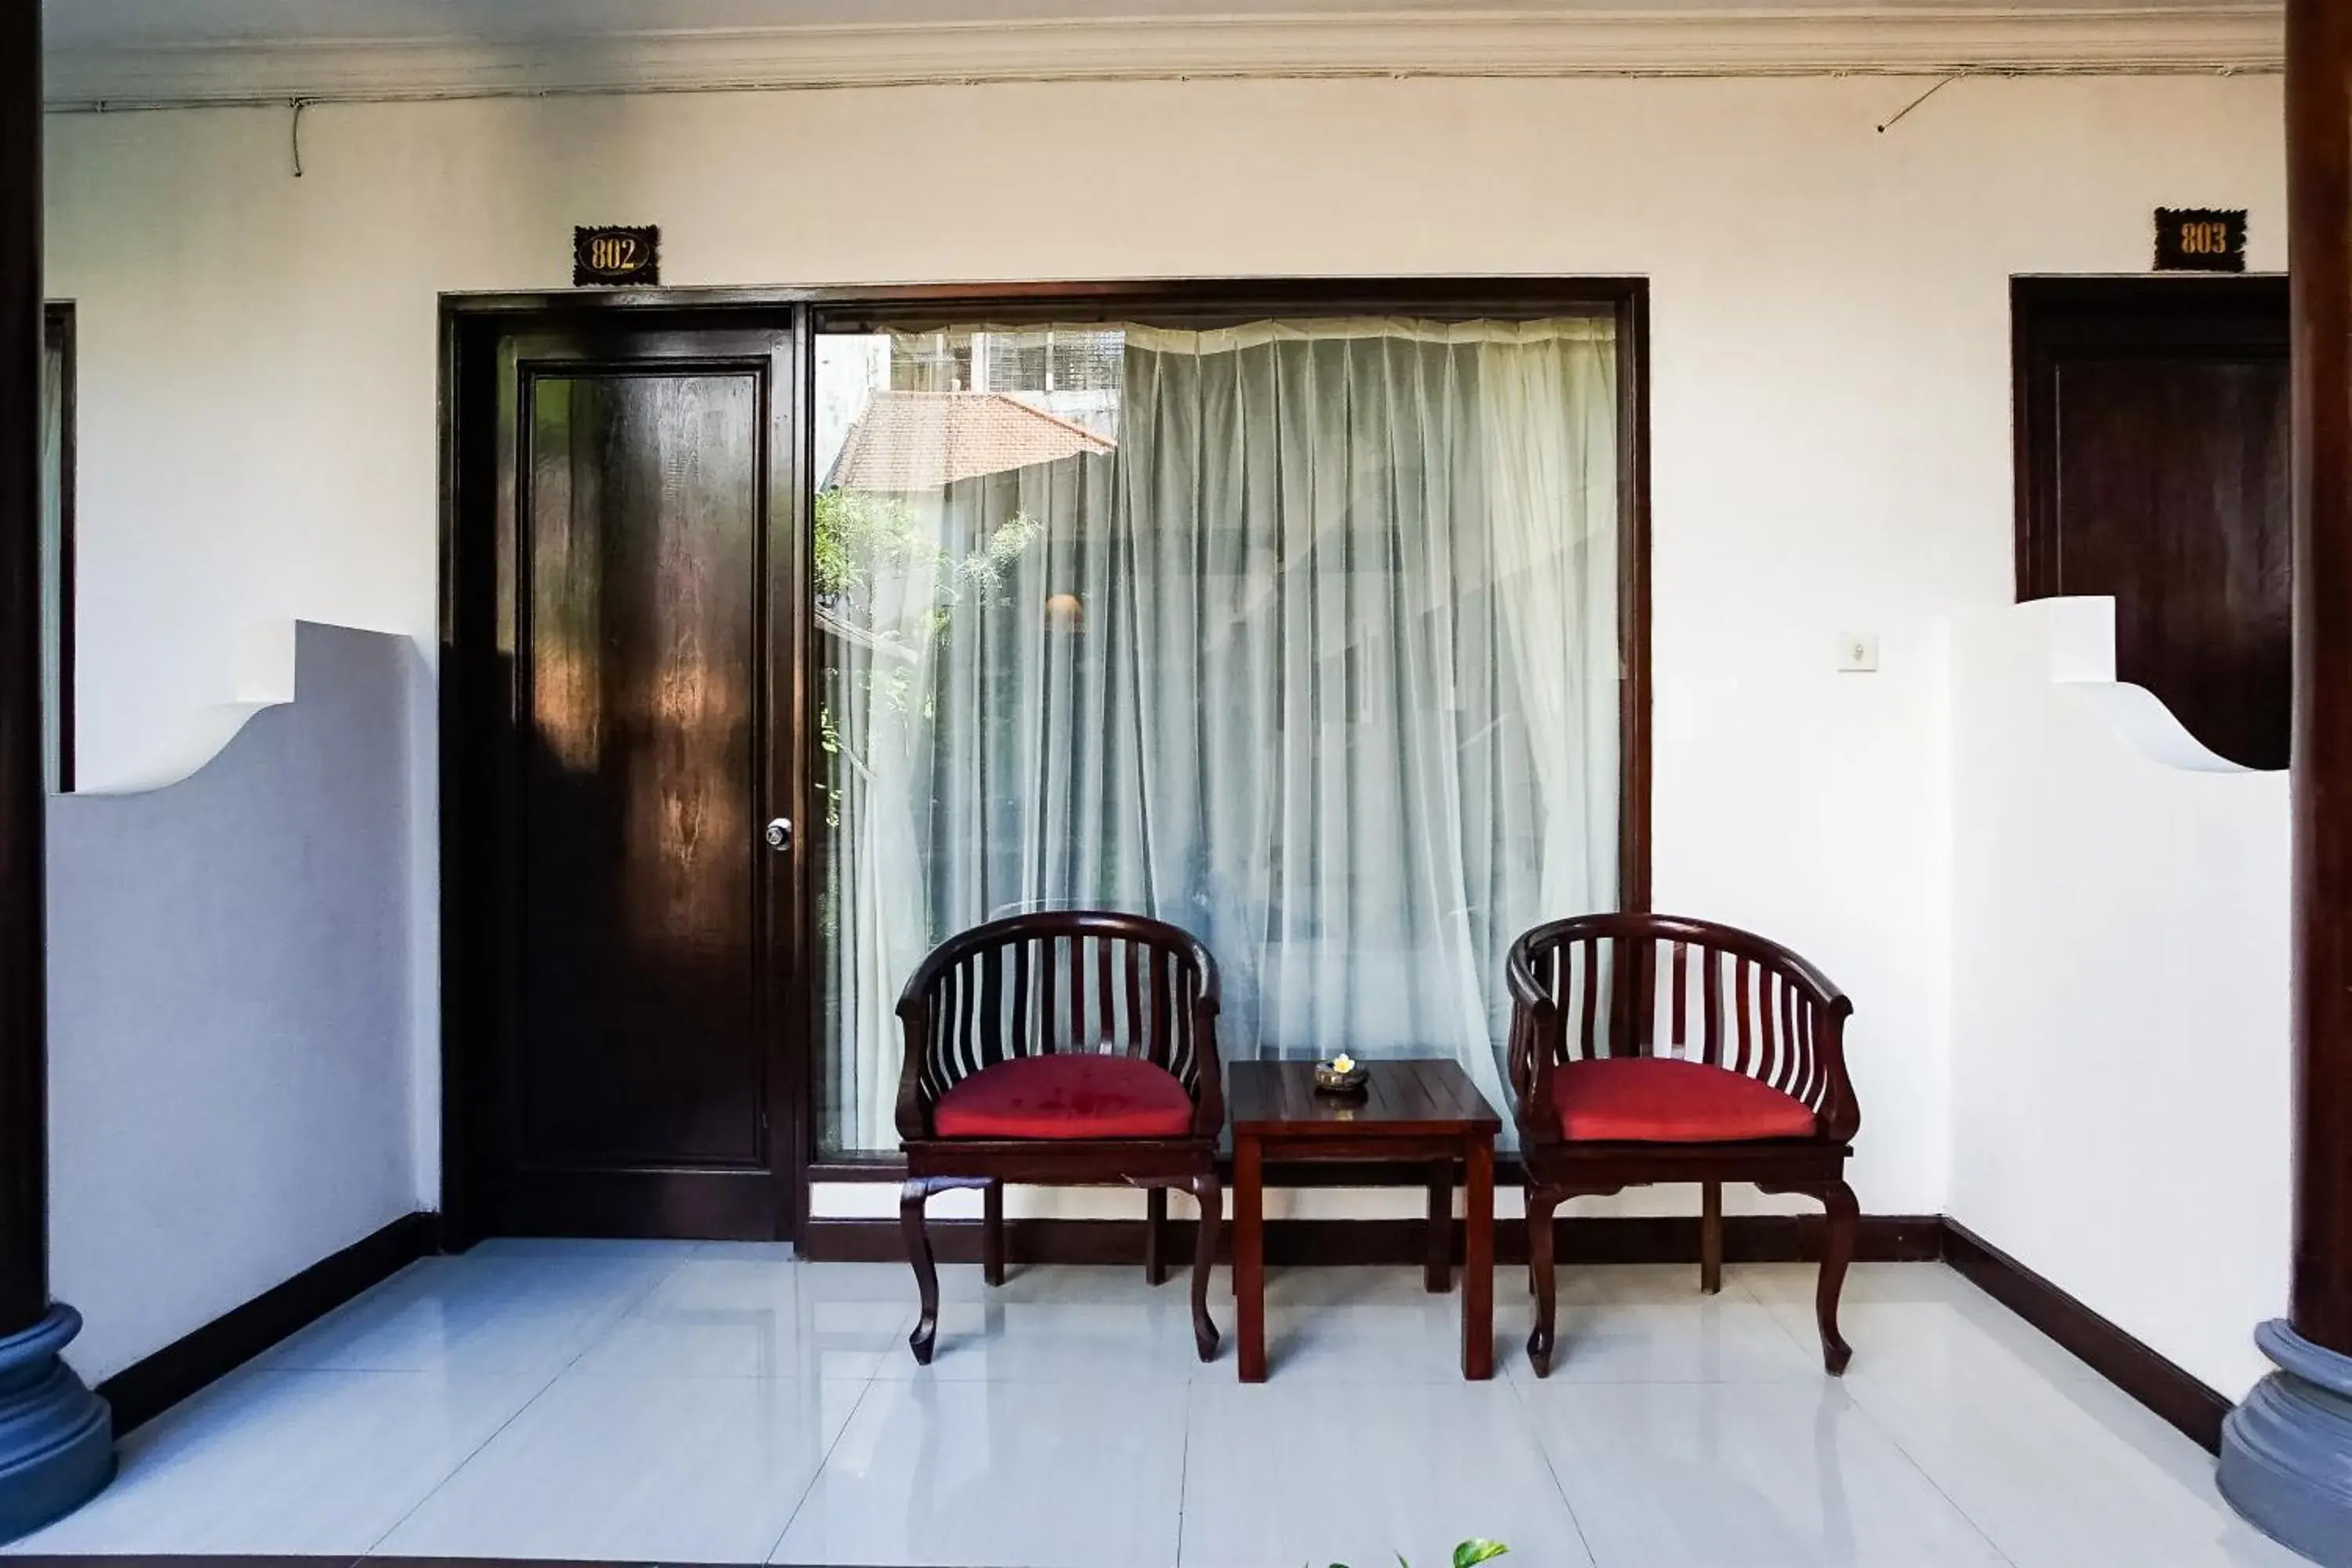 Balcony/Terrace, Seating Area in Taman Ayu Legian